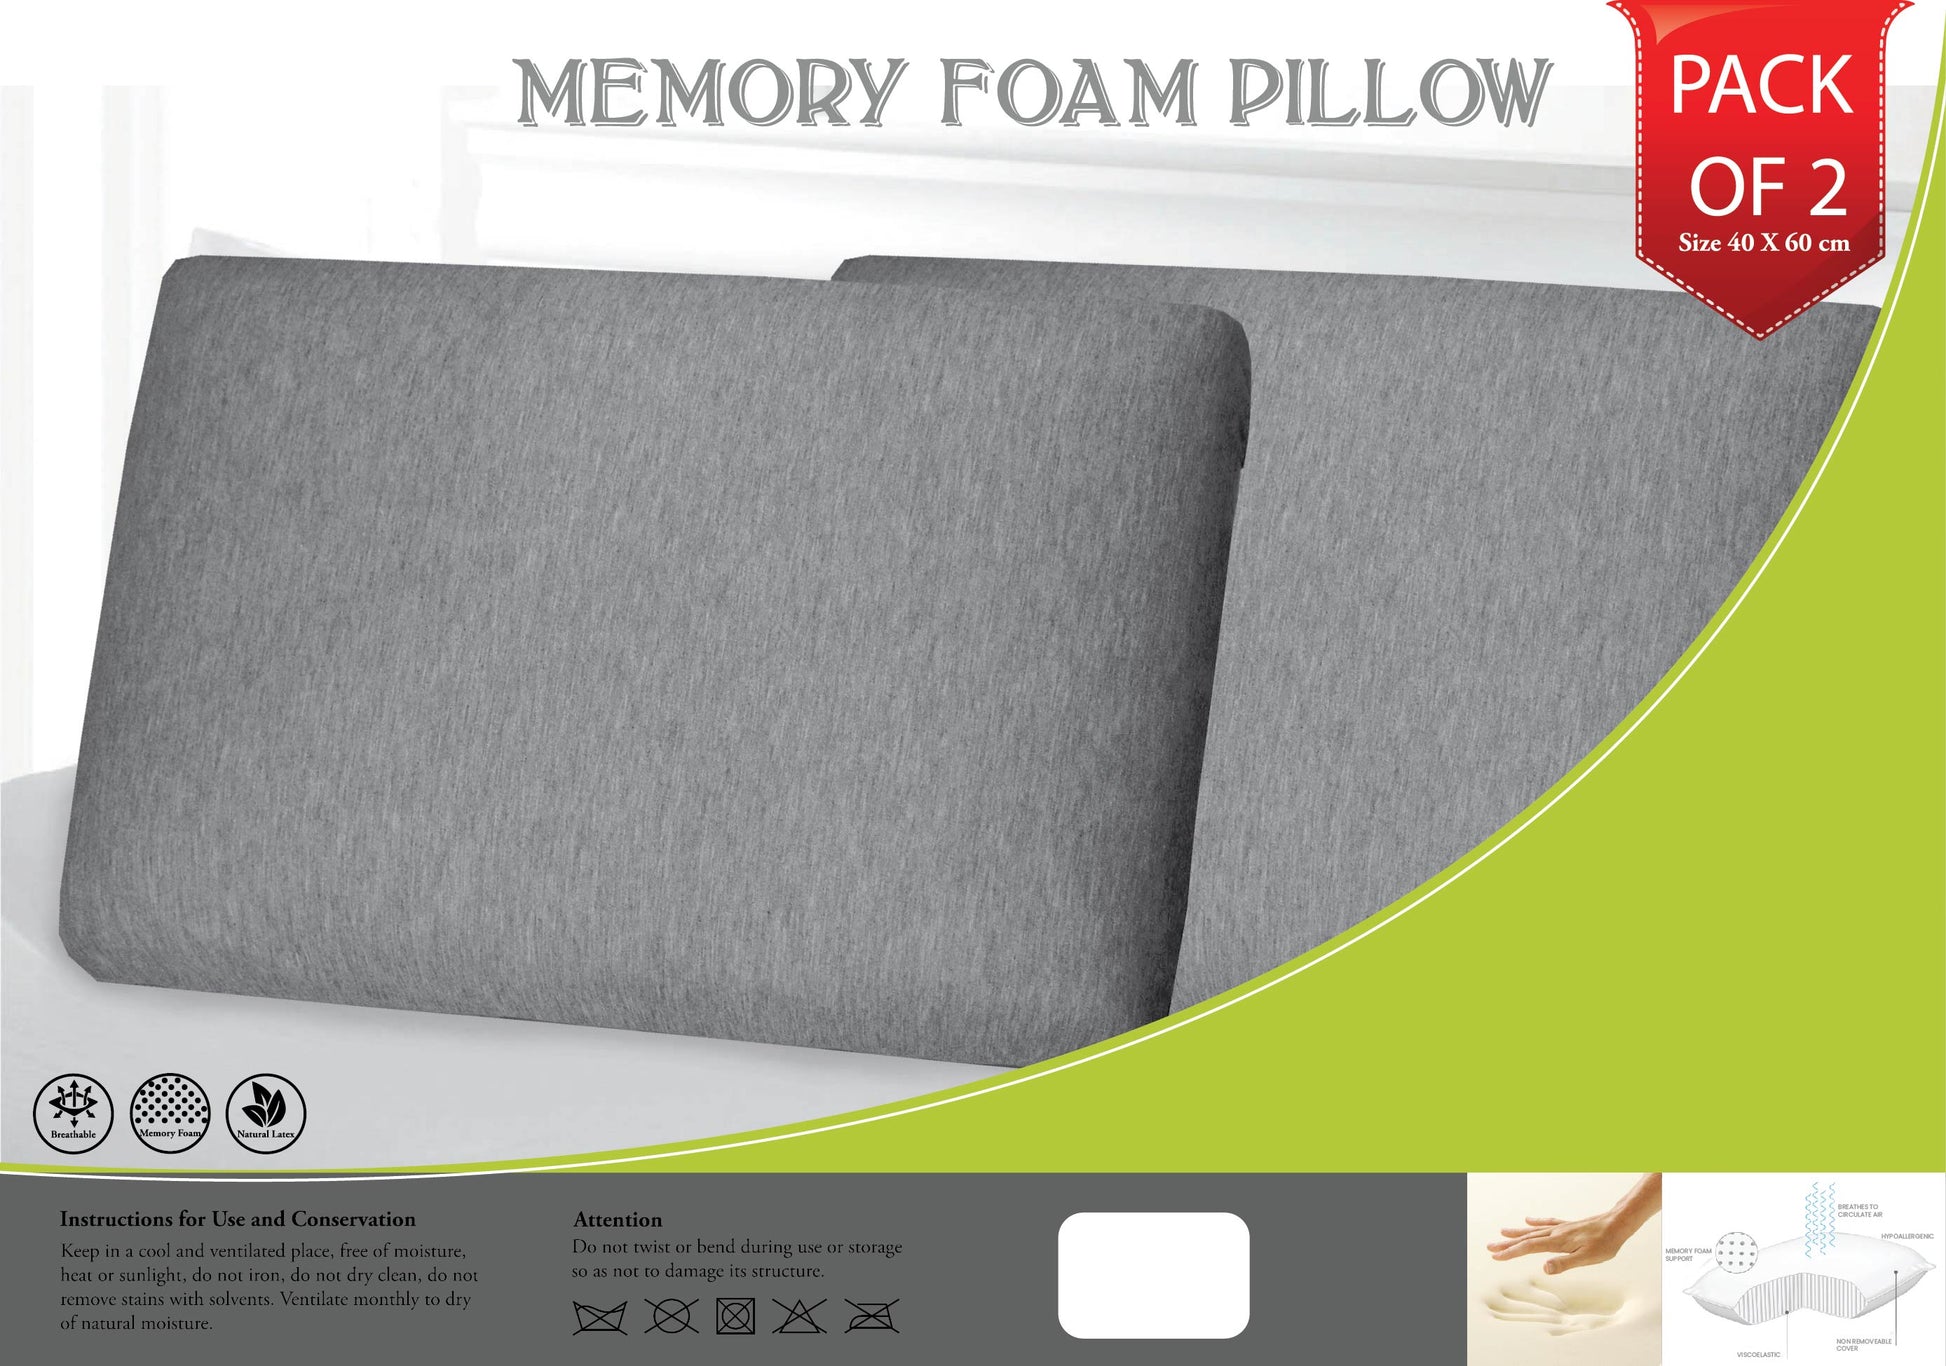 Buy Pack of 2 Memory Foam Pillow